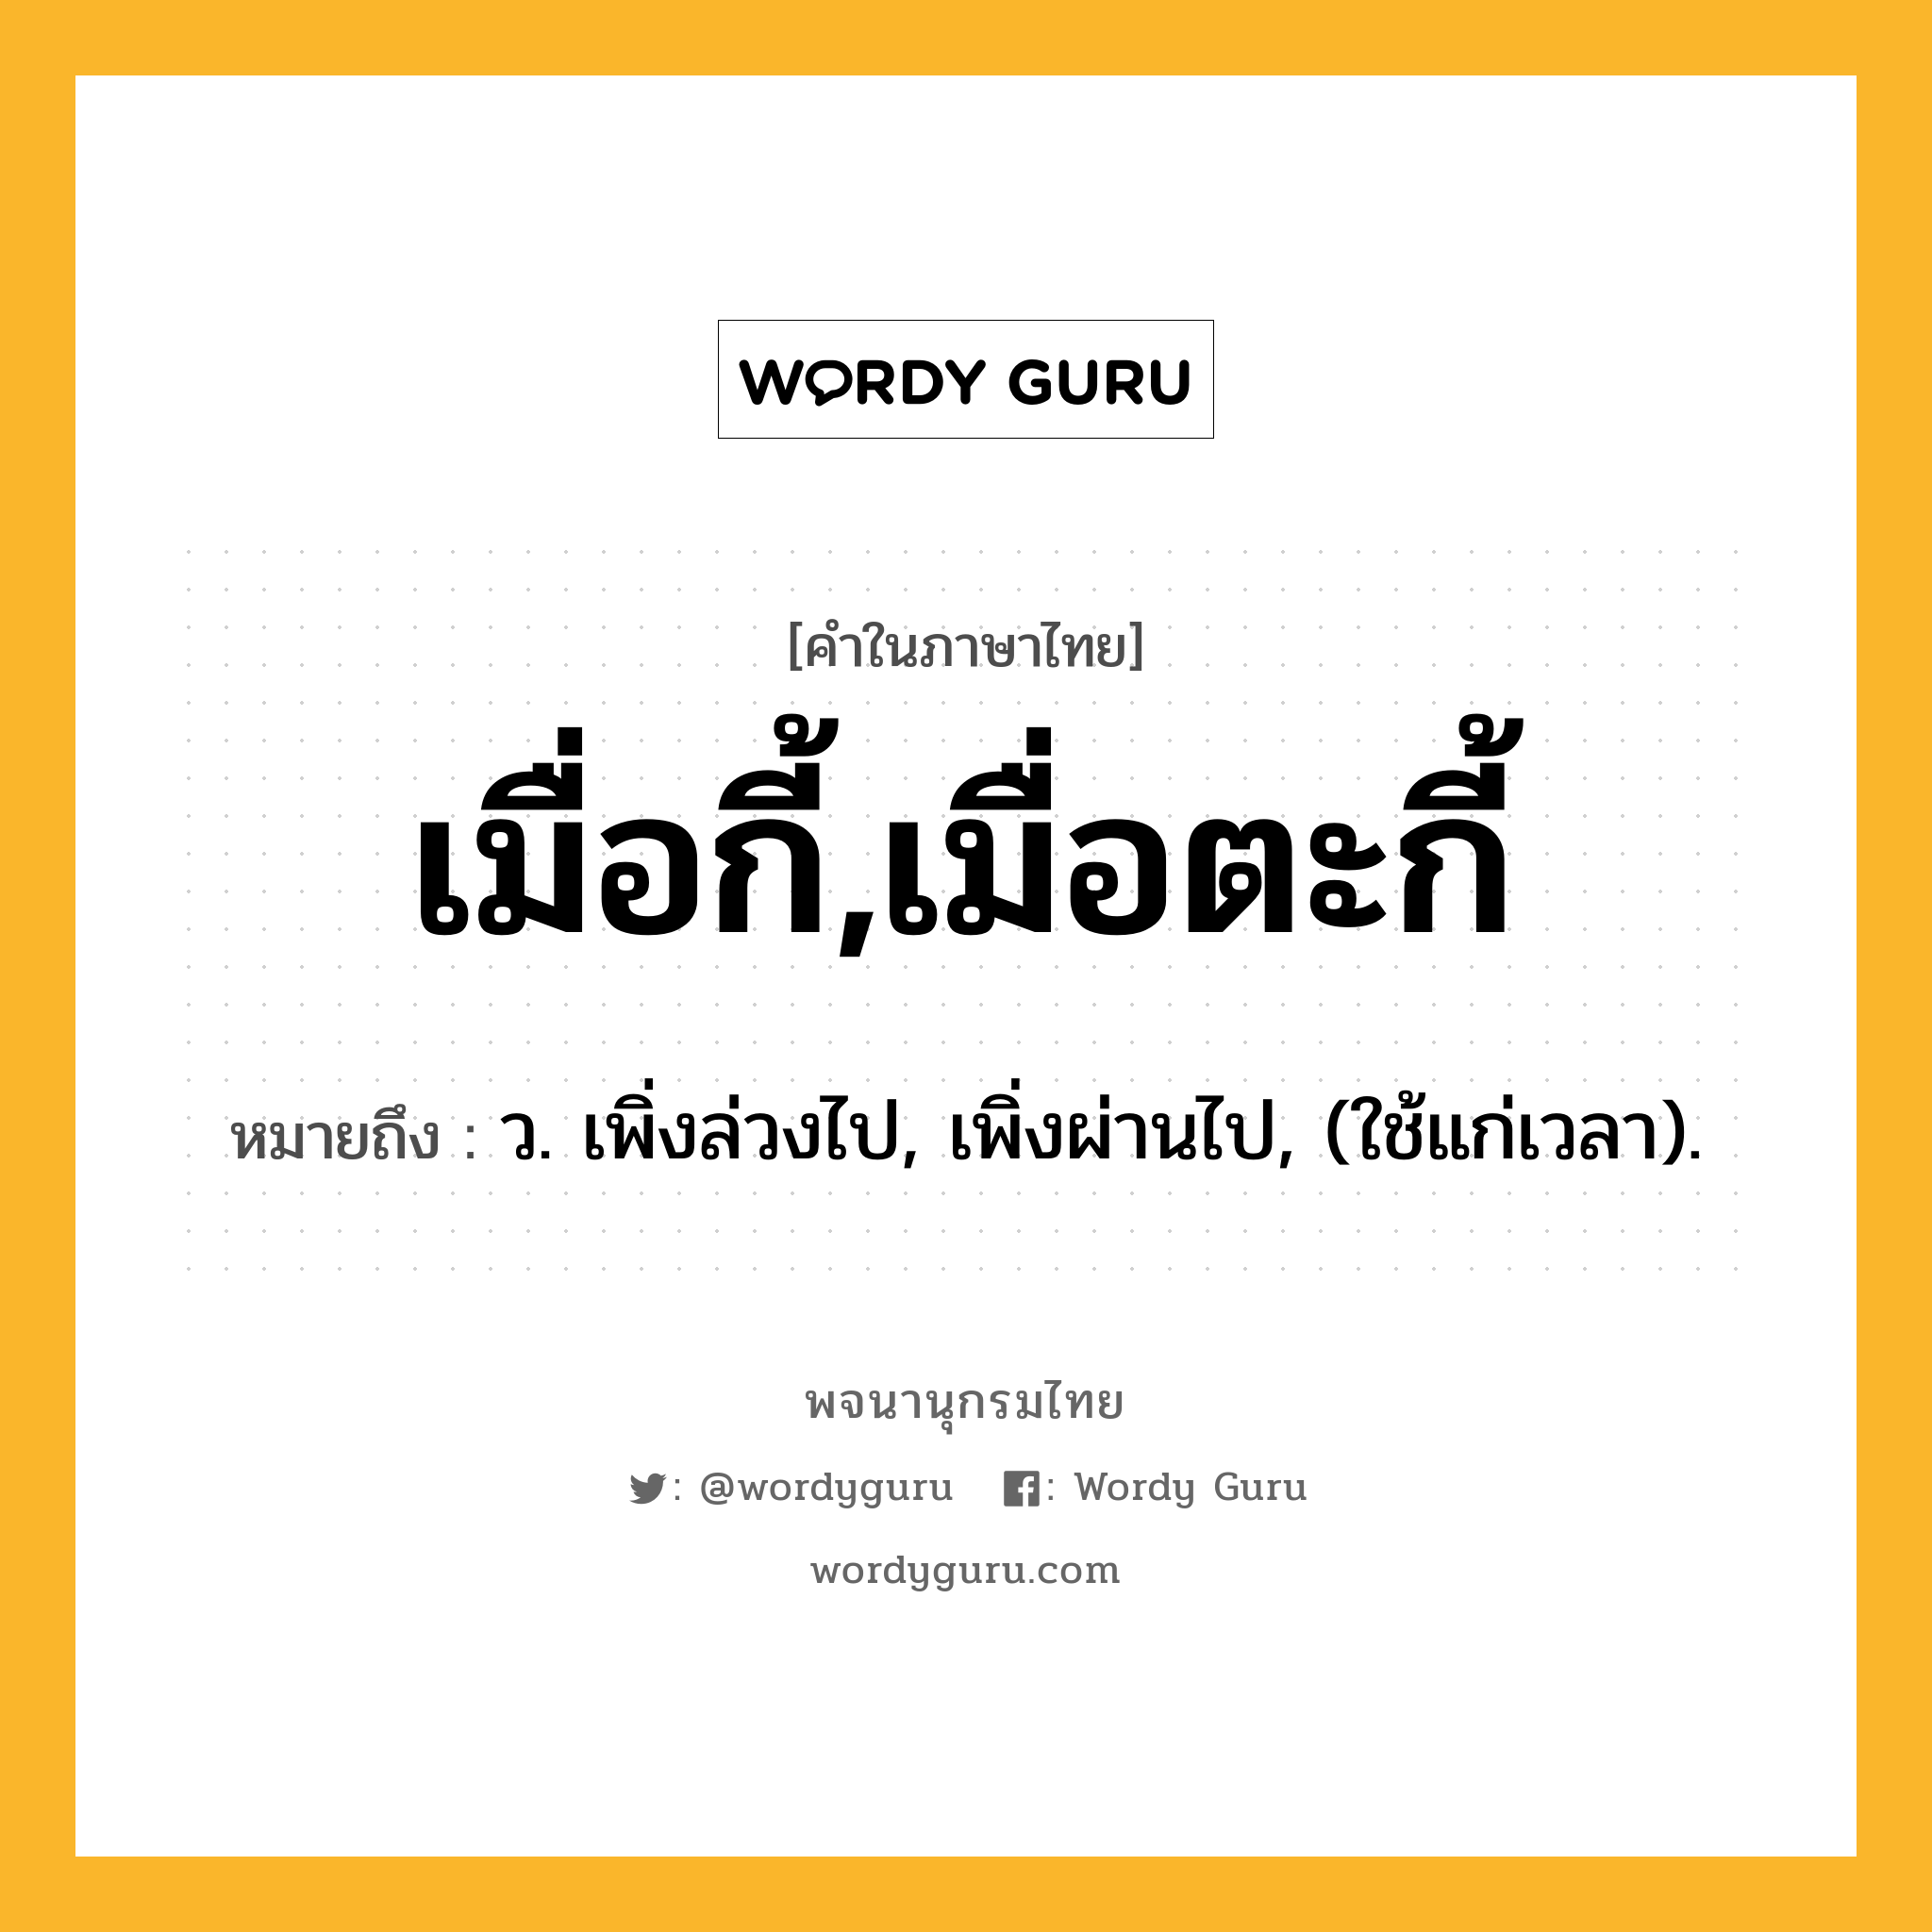 เมื่อกี้,เมื่อตะกี้ หมายถึงอะไร?, คำในภาษาไทย เมื่อกี้,เมื่อตะกี้ หมายถึง ว. เพิ่งล่วงไป, เพิ่งผ่านไป, (ใช้แก่เวลา).